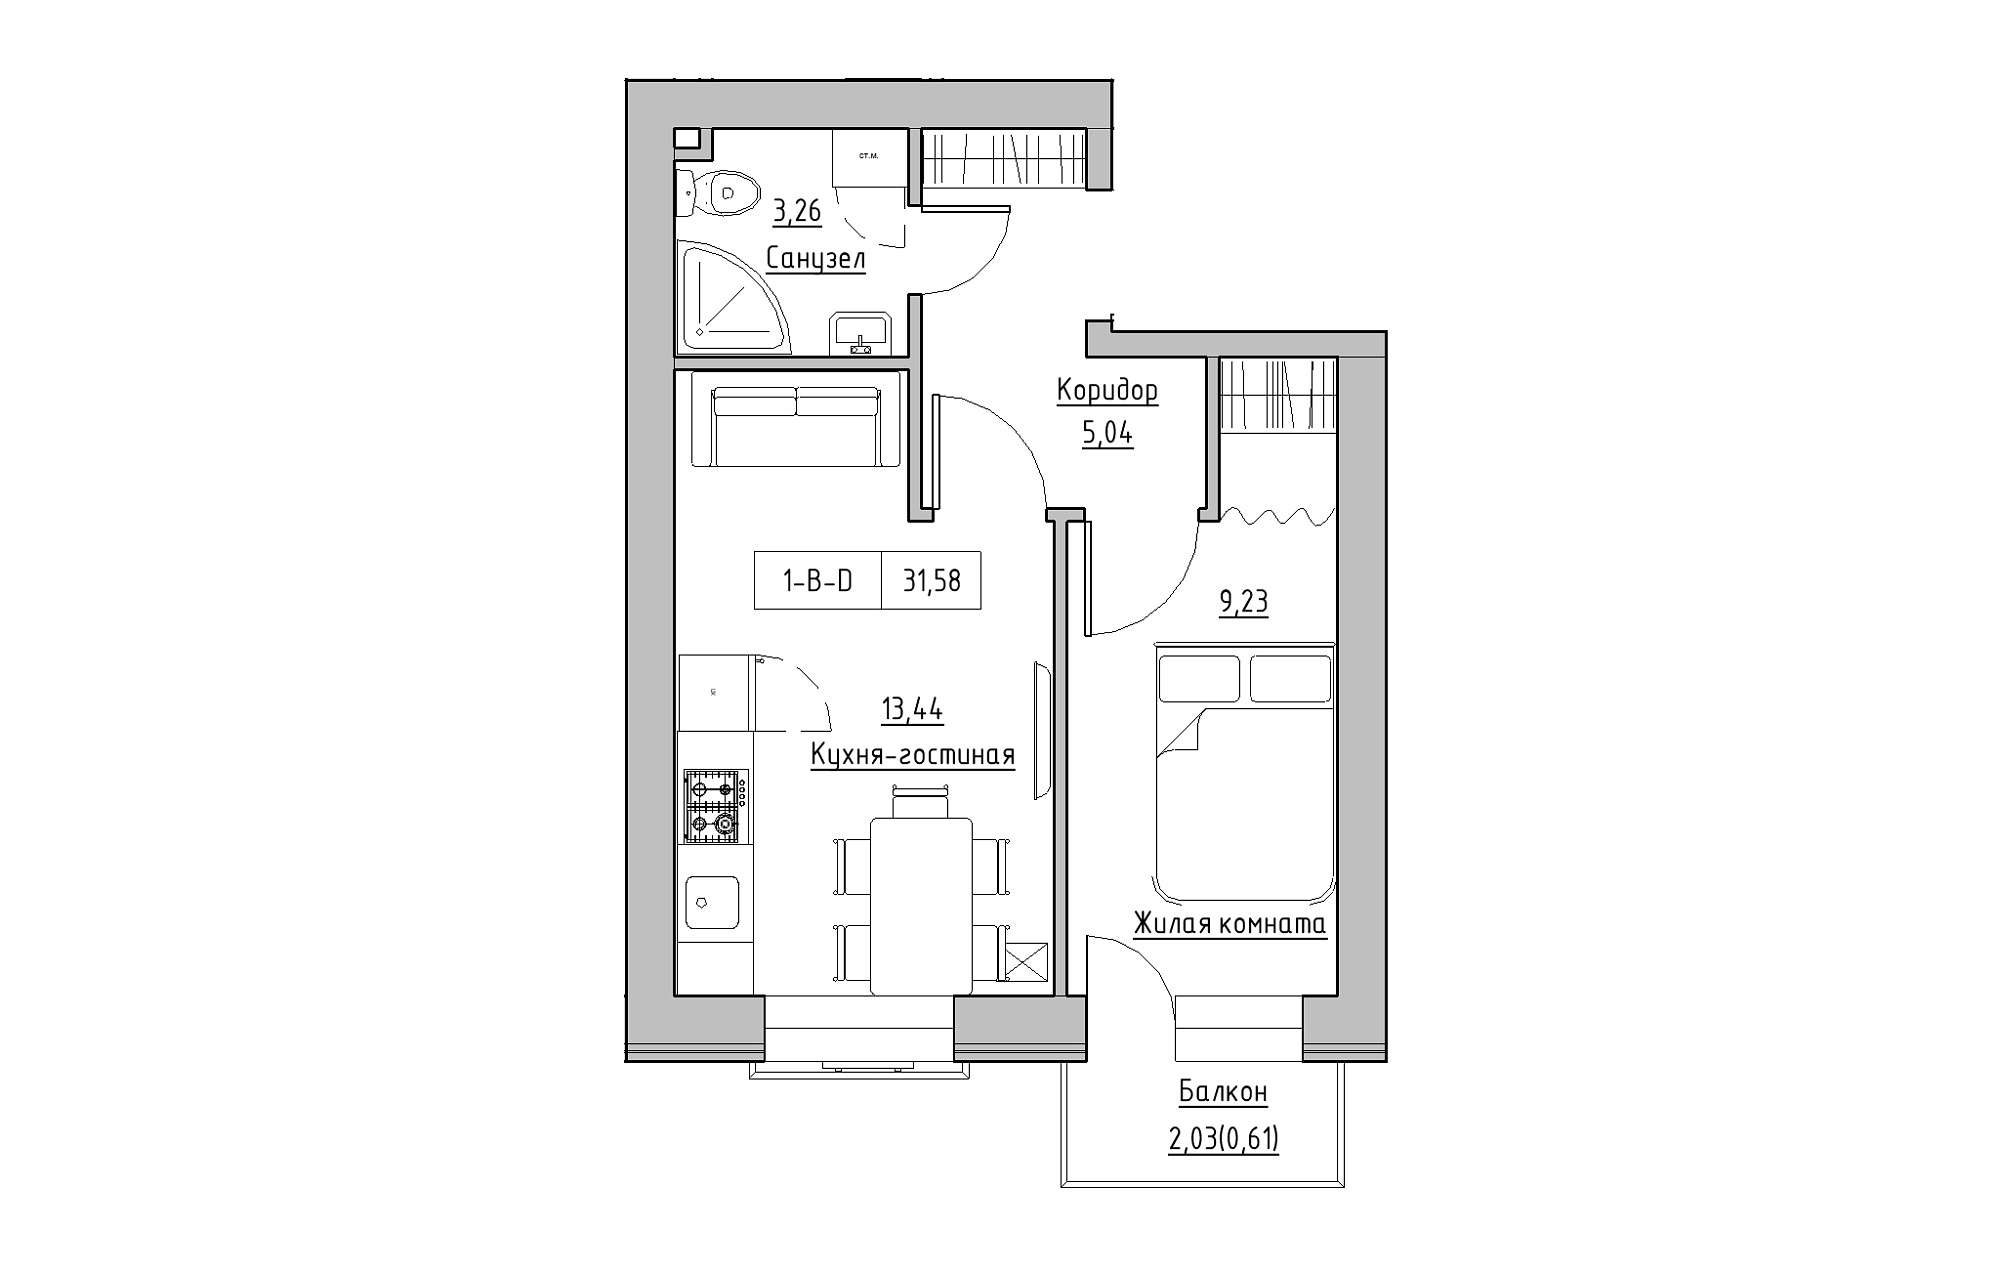 Планировка 1-к квартира площей 31.58м2, KS-018-02/0003.